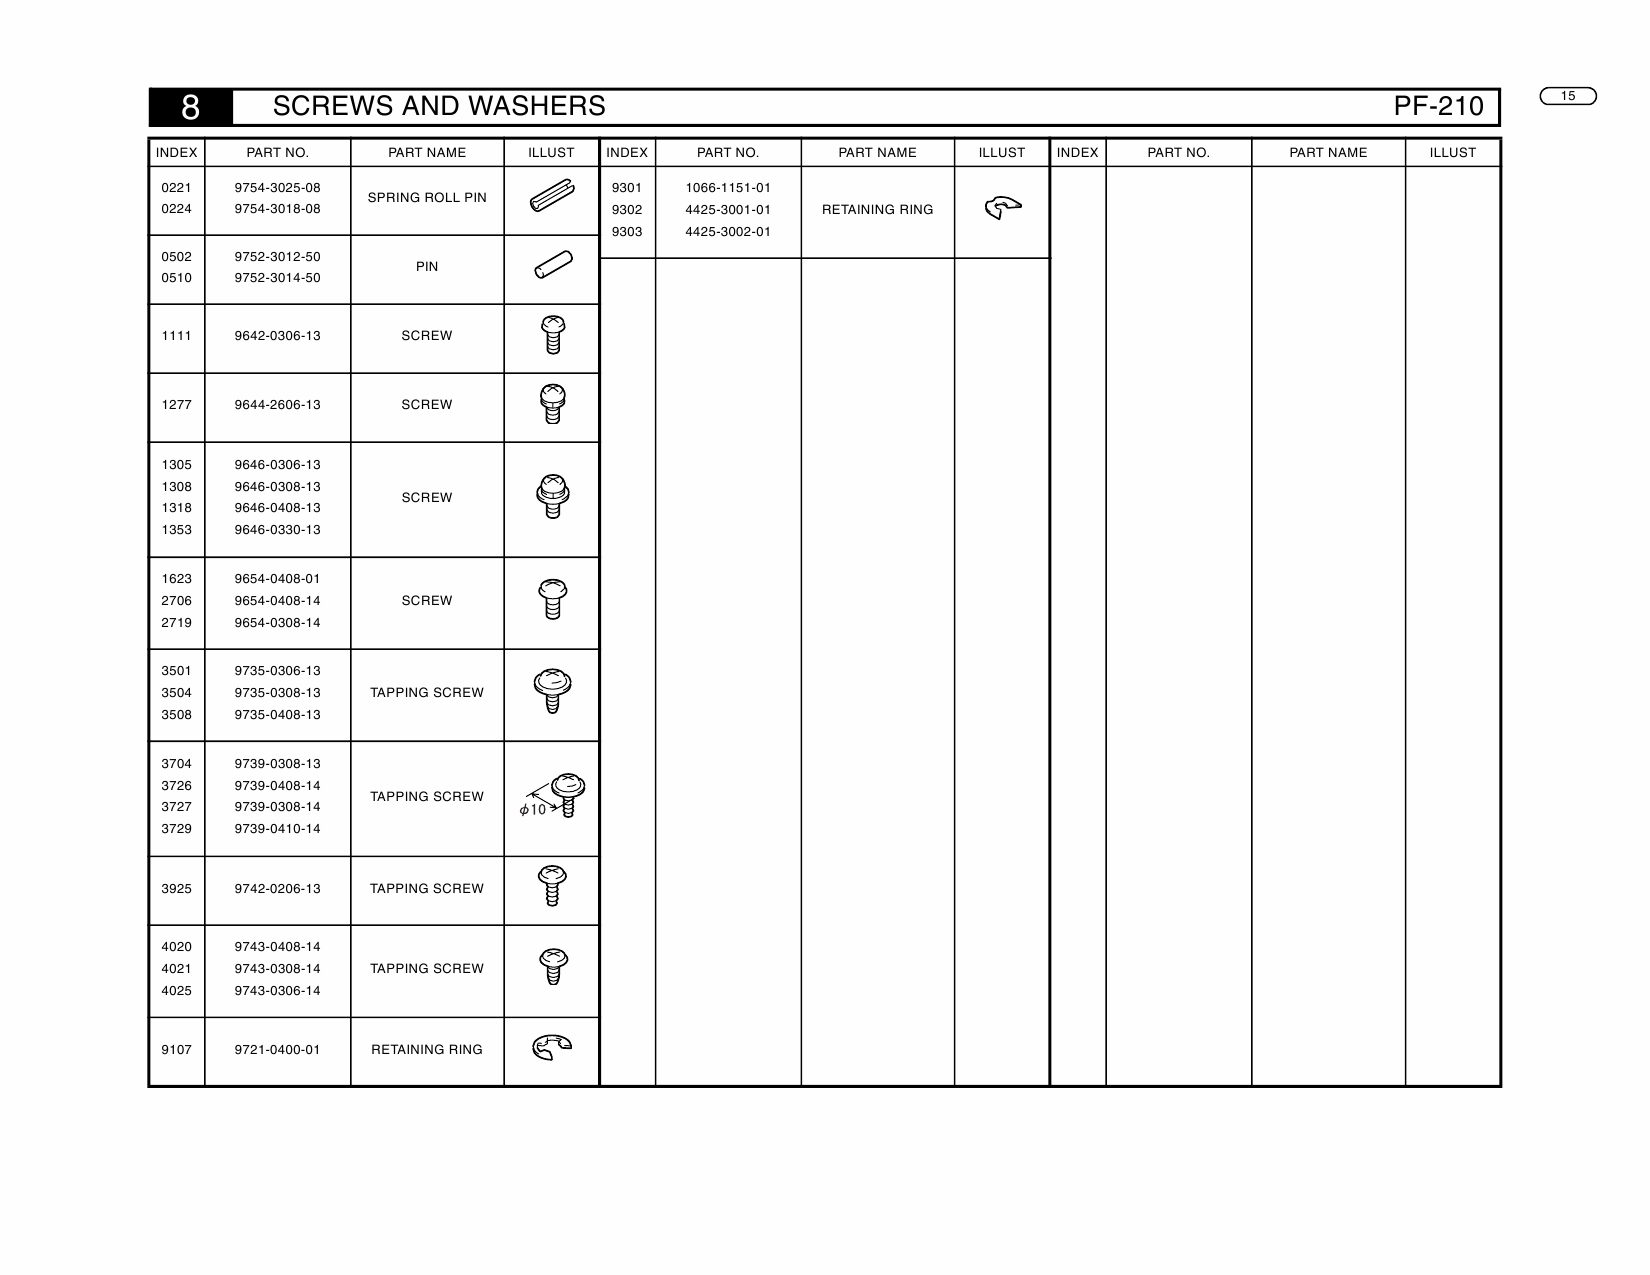 Konica-Minolta Options PF-210 Parts Manual-5